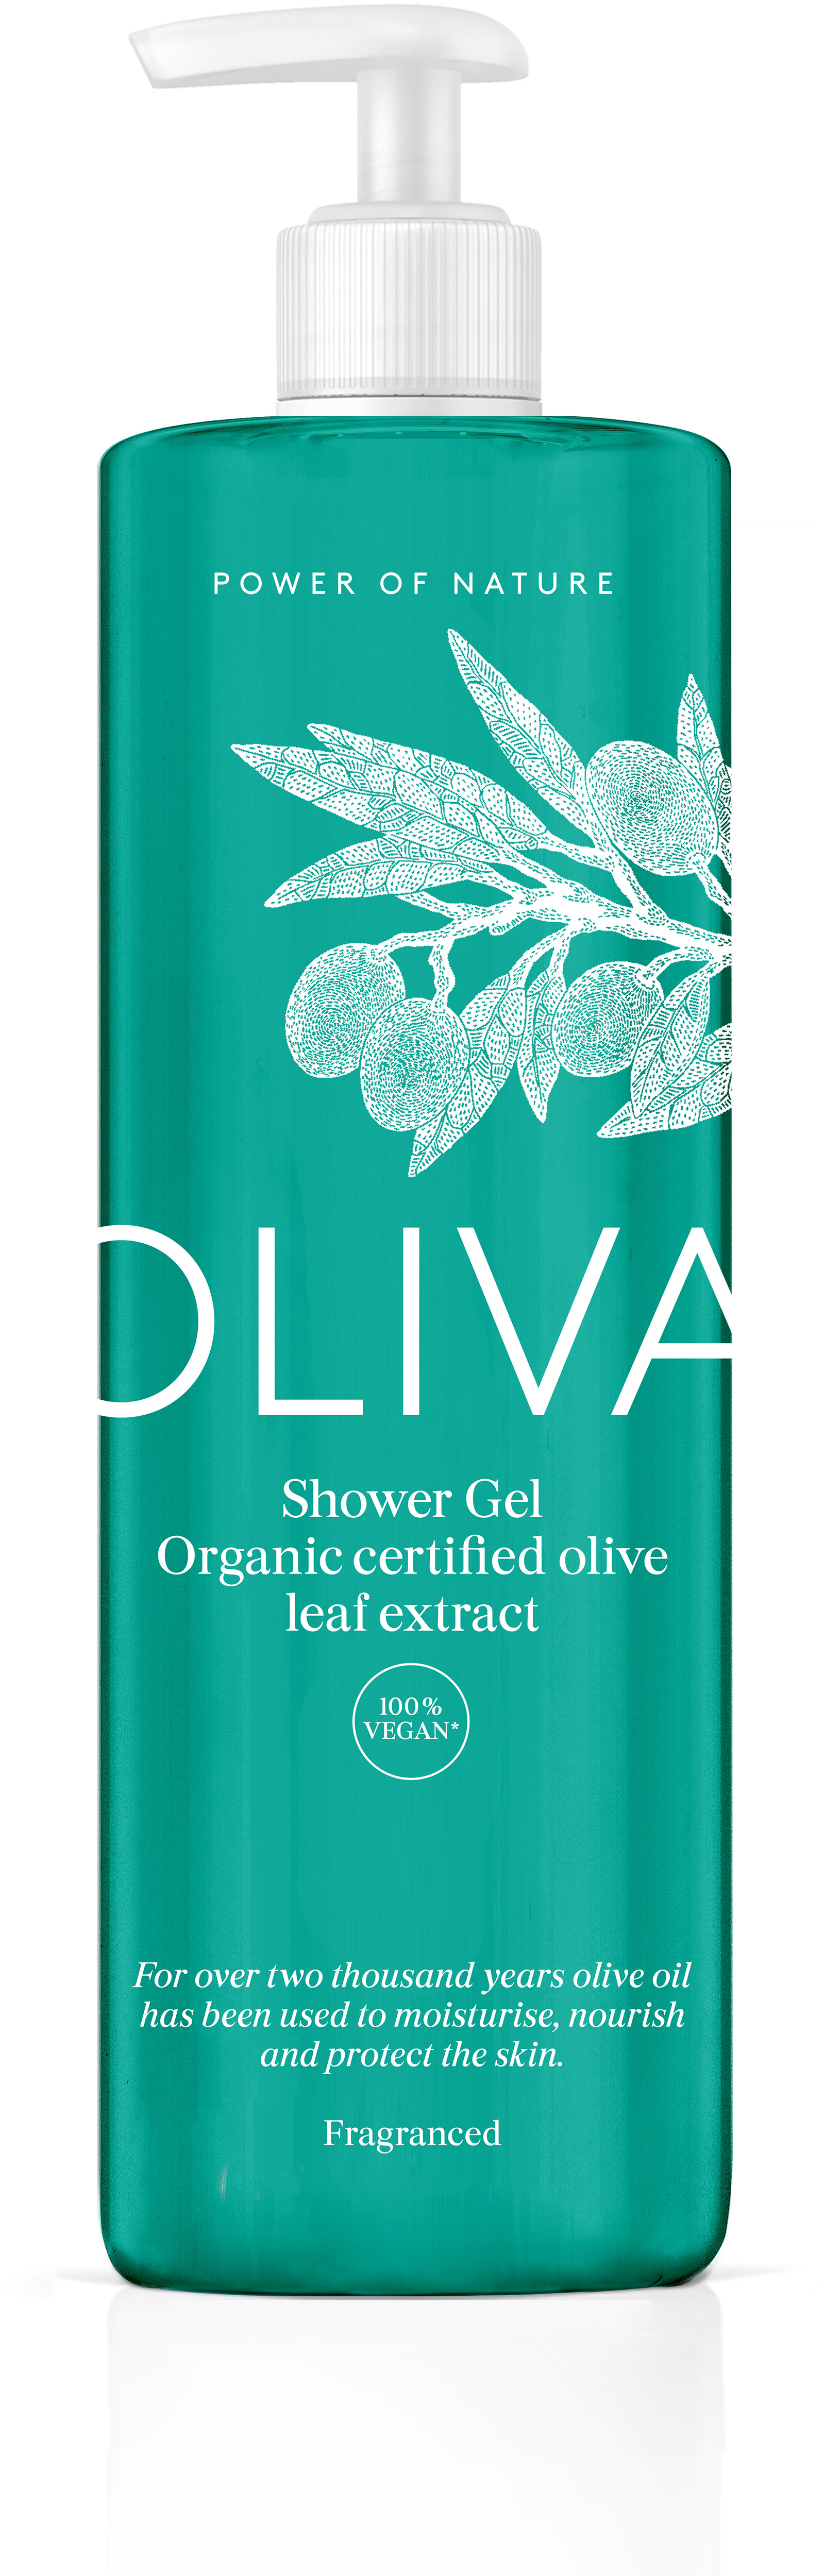 Oliva Showergel Parf 400 ml